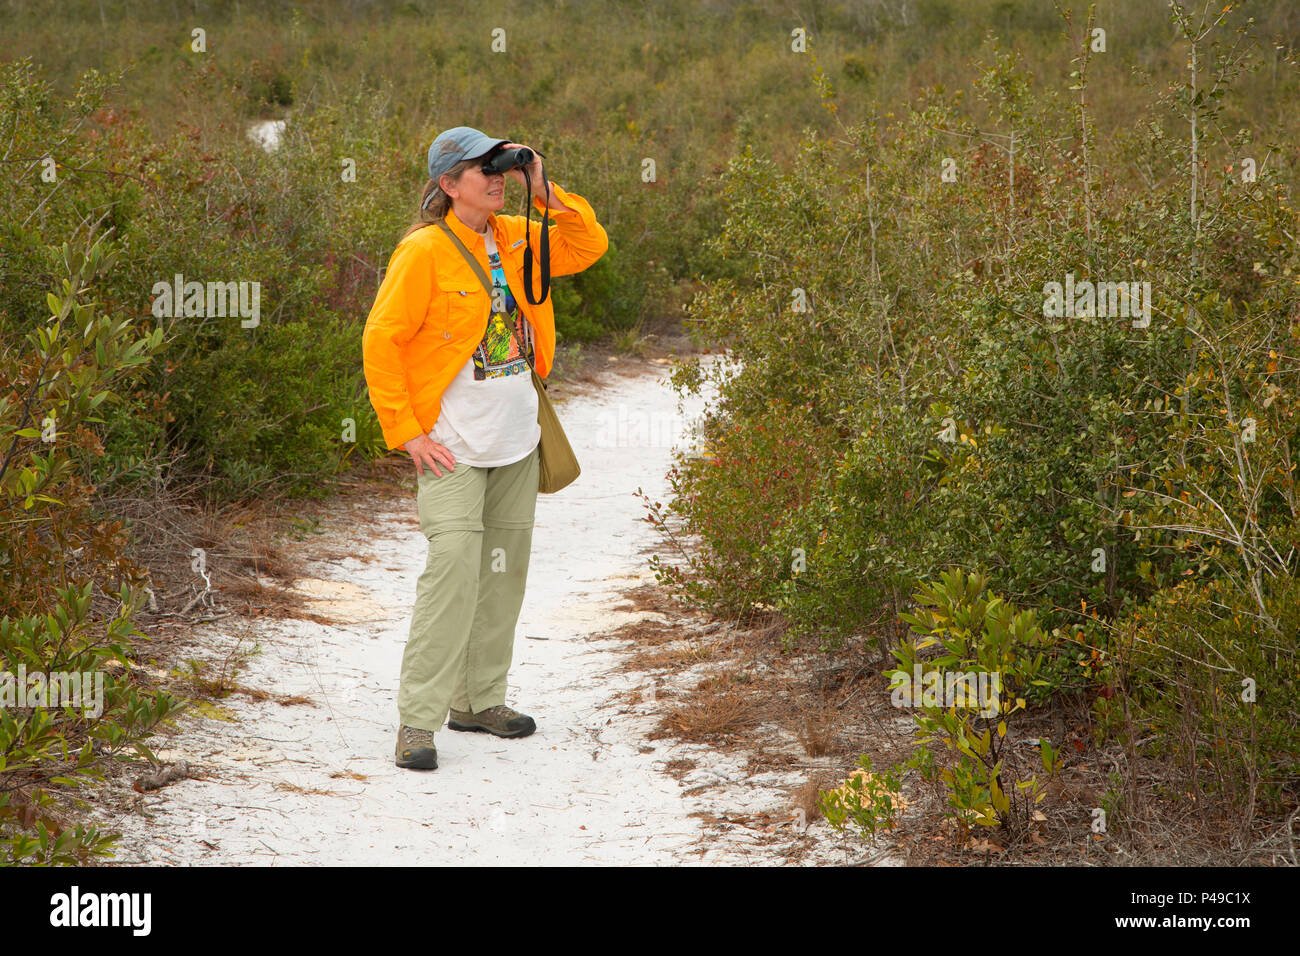 Trail through scrub, Lyonia Preserve,  Florida Stock Photo